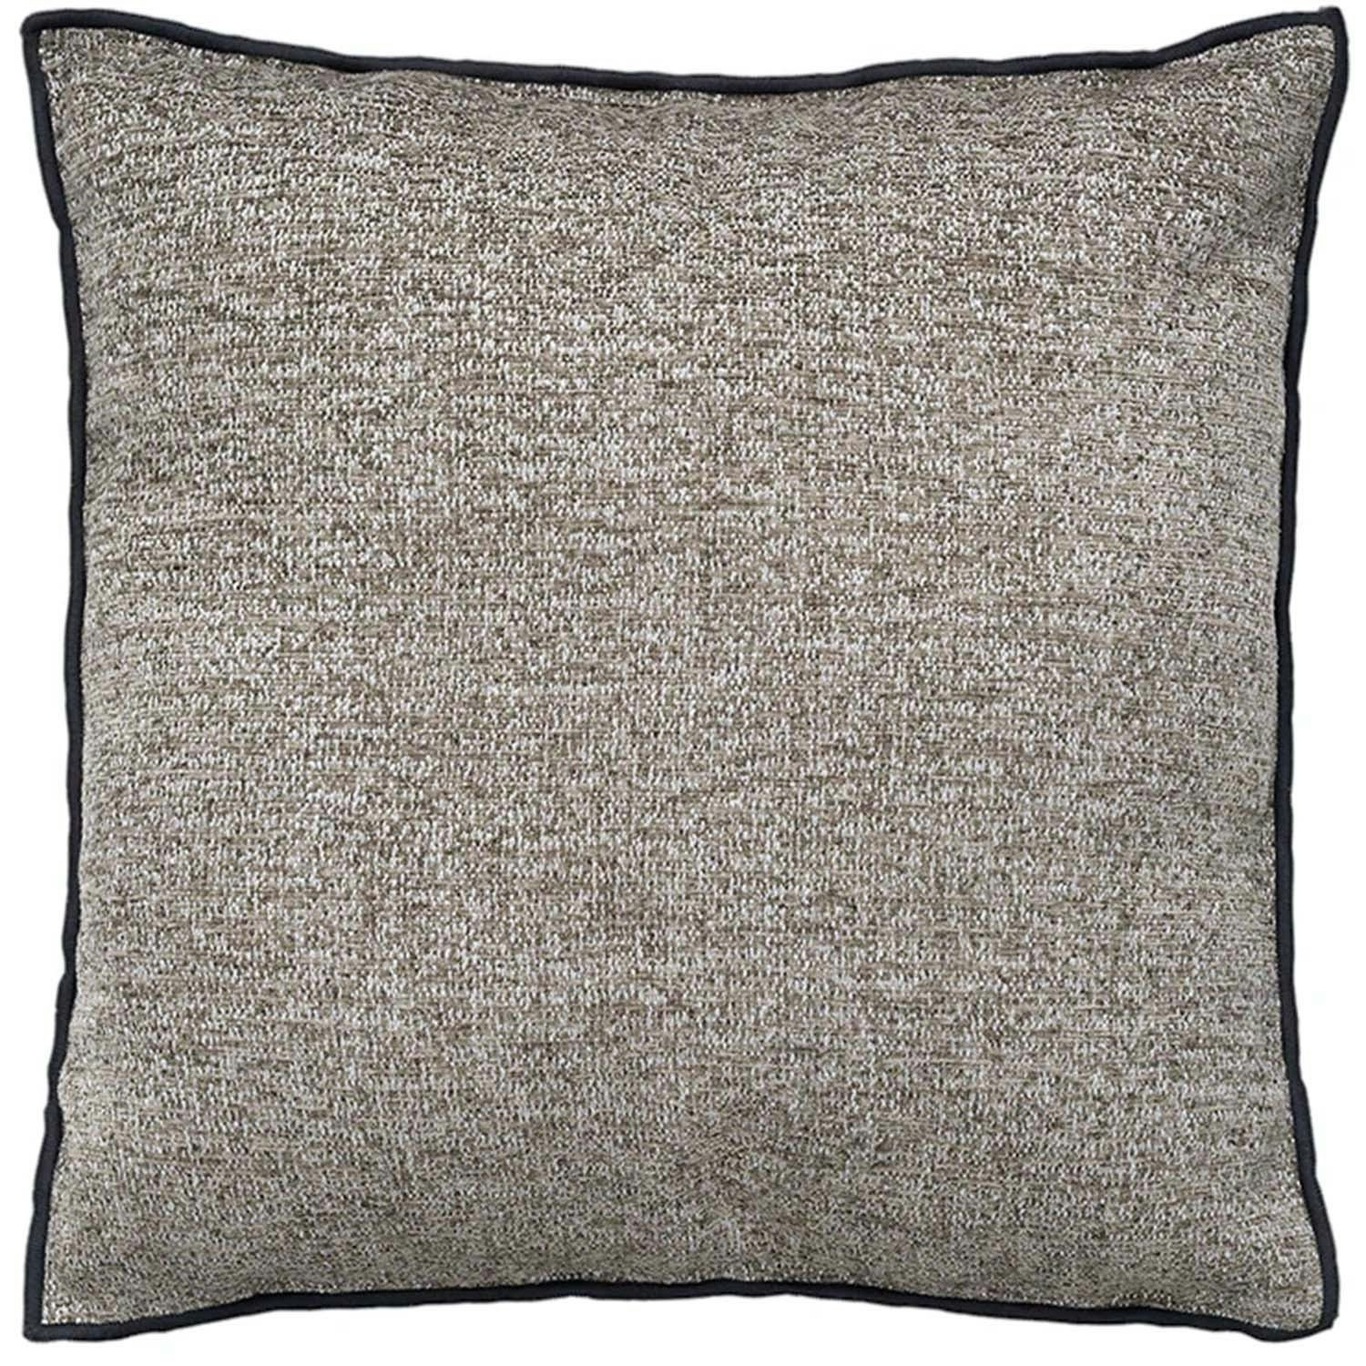 CHENILLE Cushion Cover 45x45 cm, Espresso